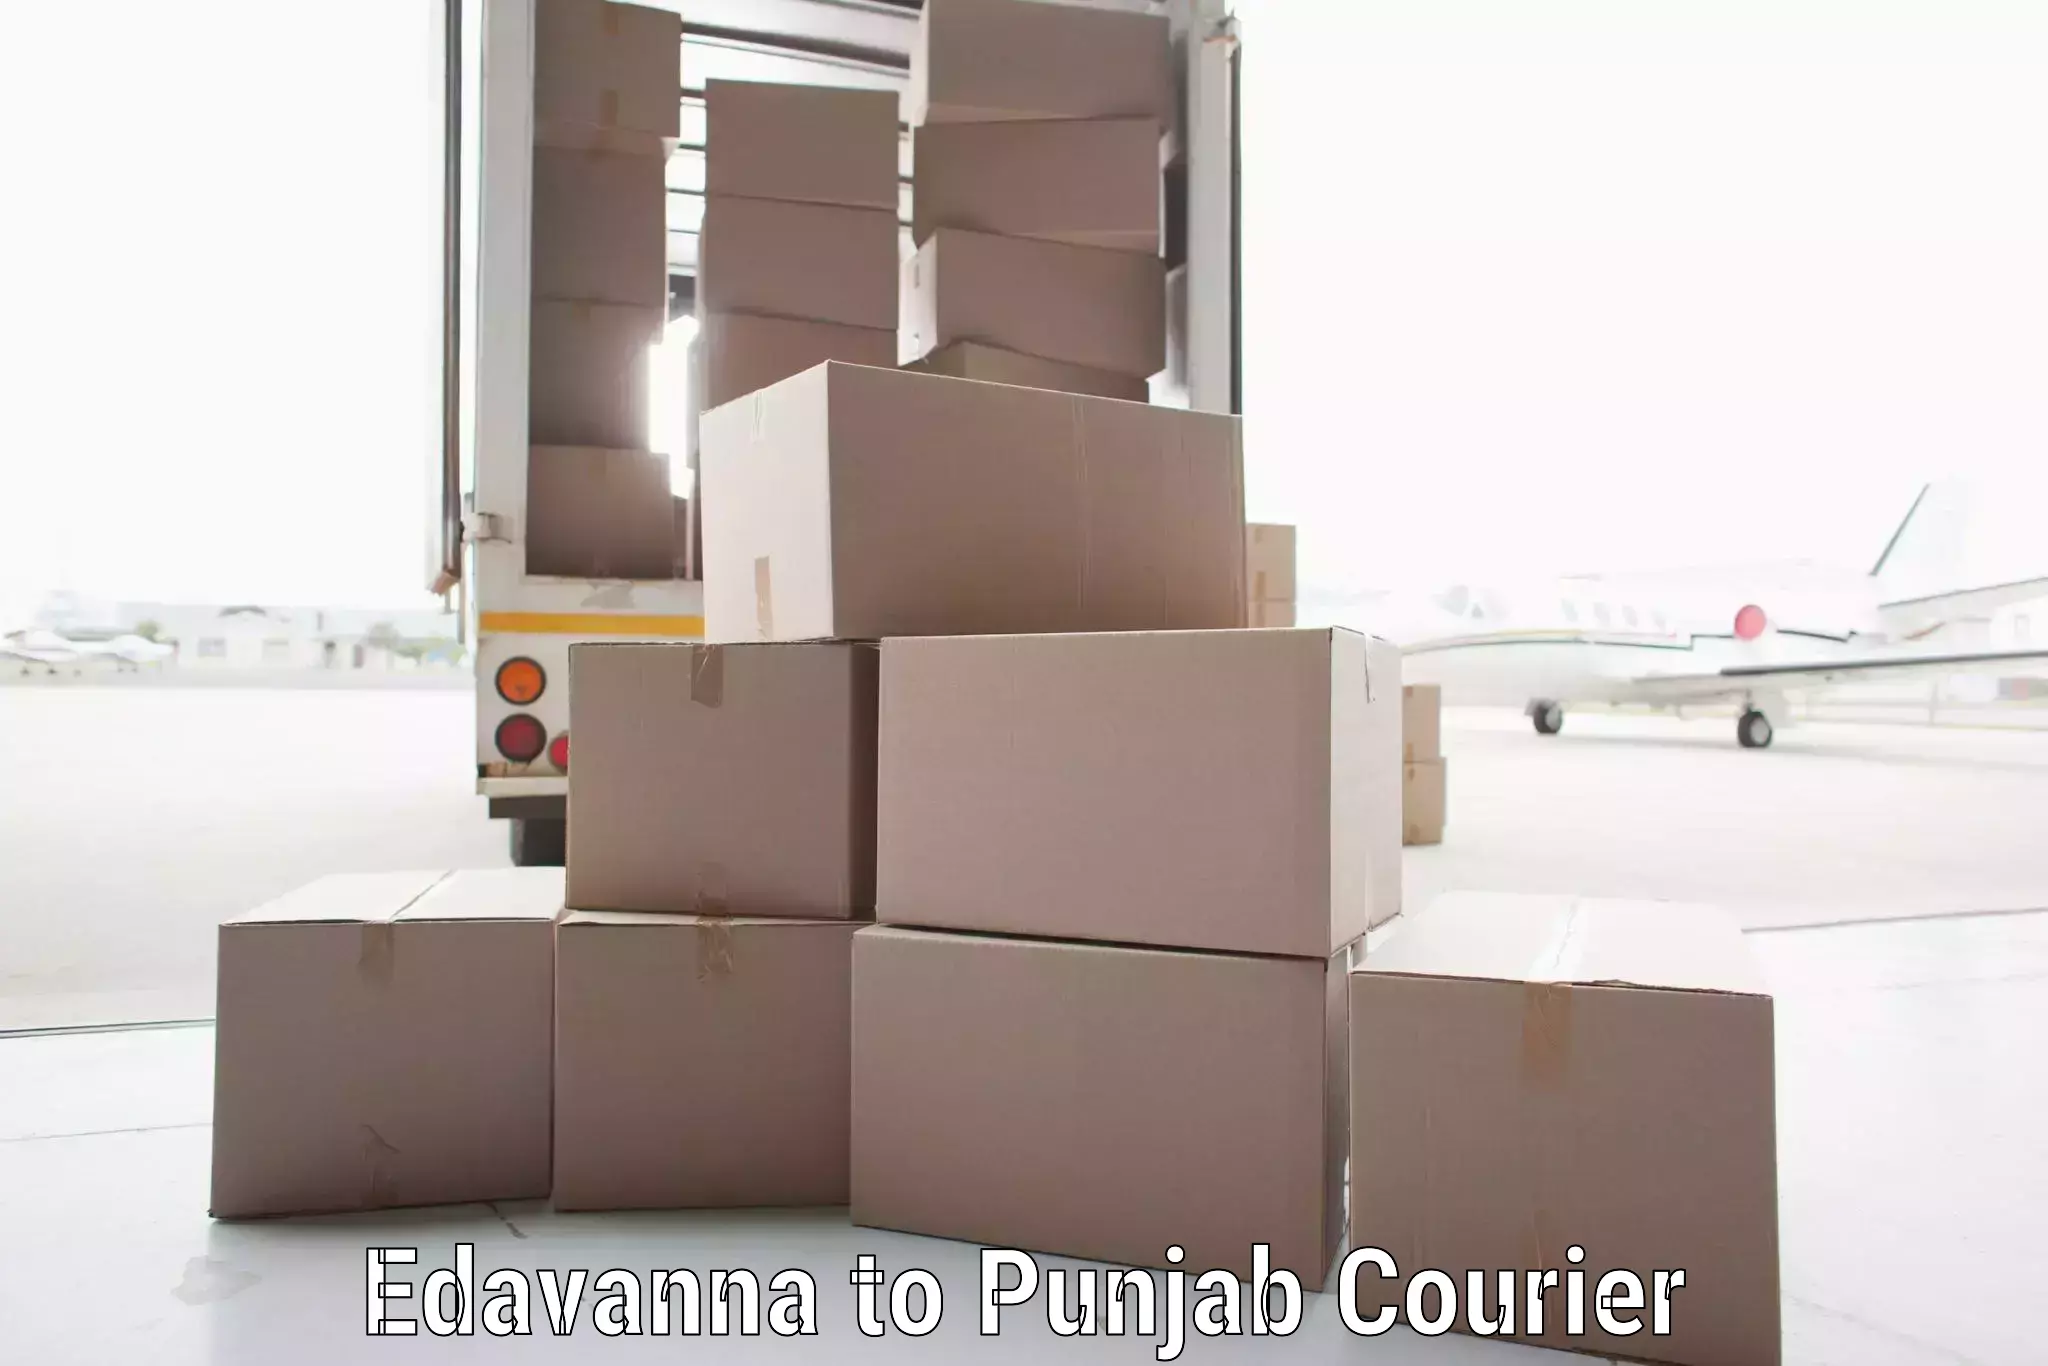 Express mail solutions Edavanna to Gurdaspur